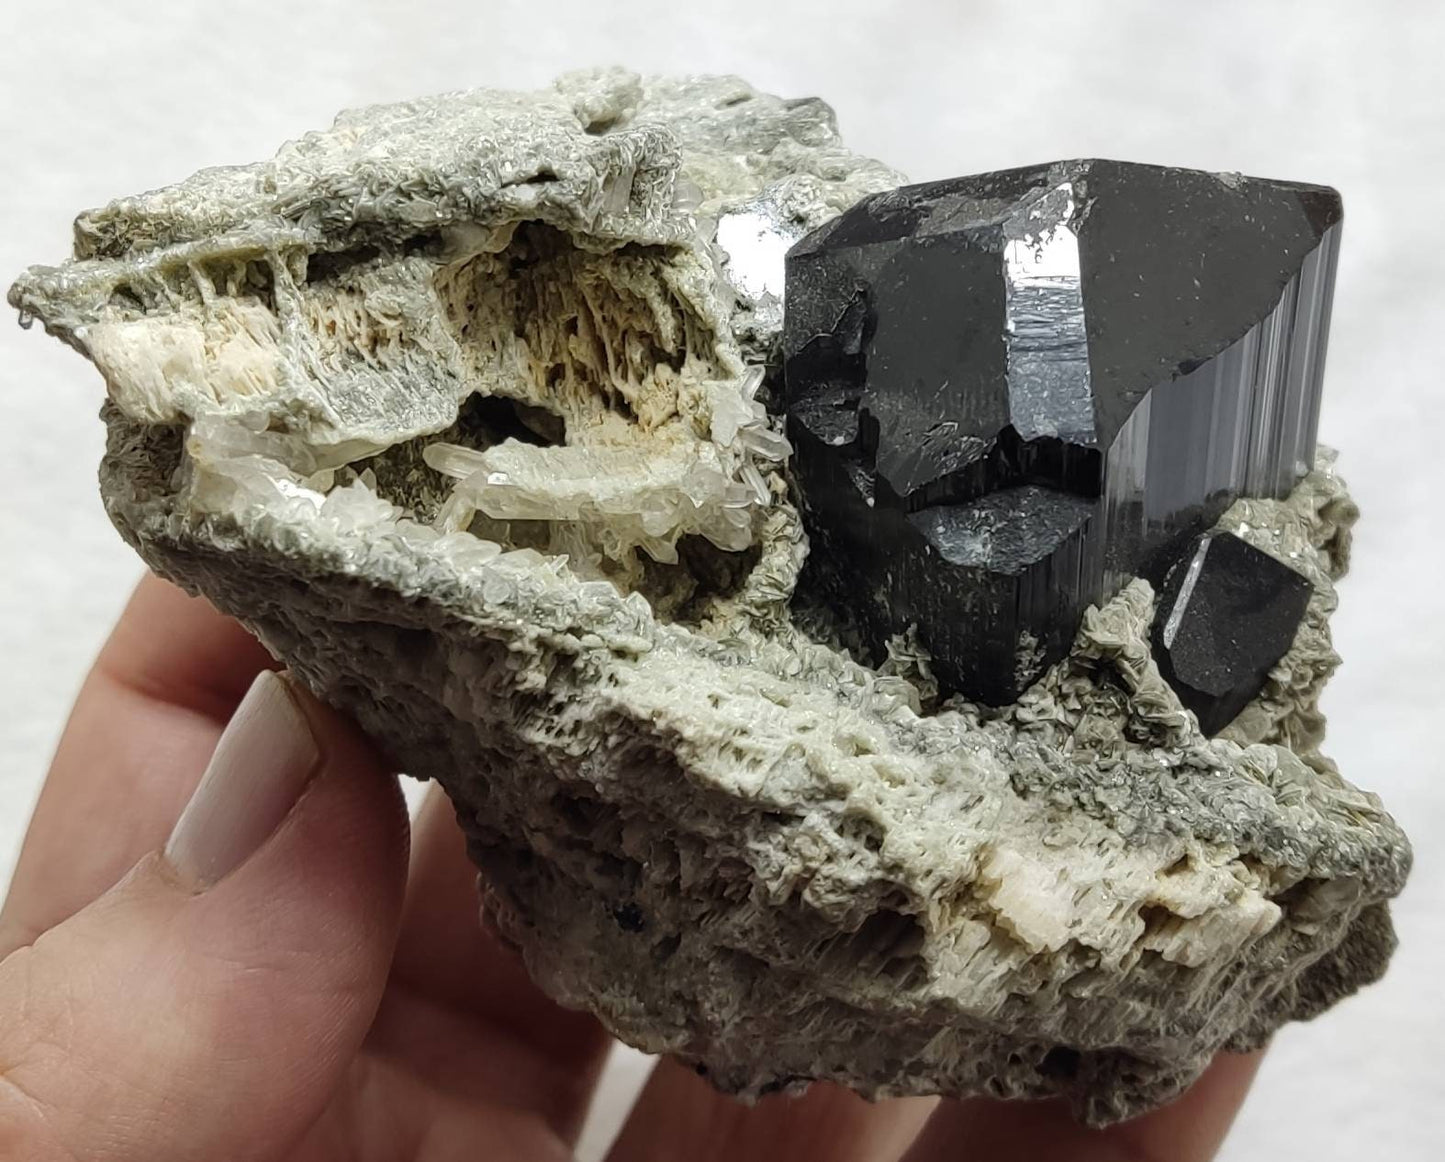 Tourmaline crystals specimen with quartz and mica 374 grams